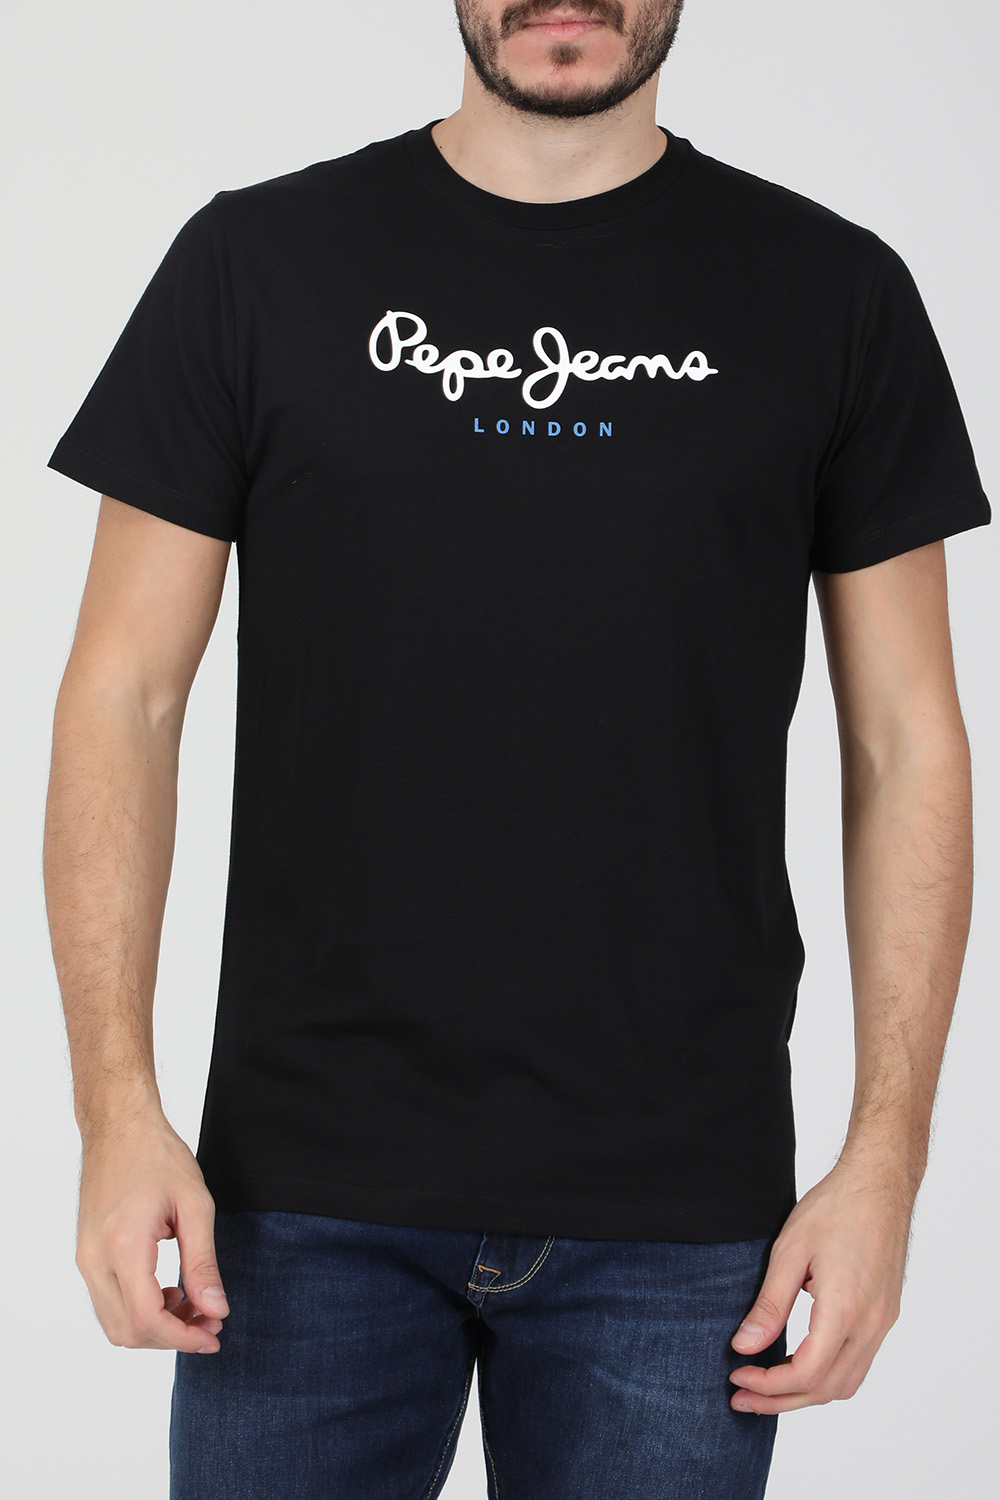 Ανδρικά/Ρούχα/Μπλούζες/Κοντομάνικες PEPE JEANS - Ανδρική κοντομάνικη μπλούζα PEPE JEANS NOS EGGO μαύρη